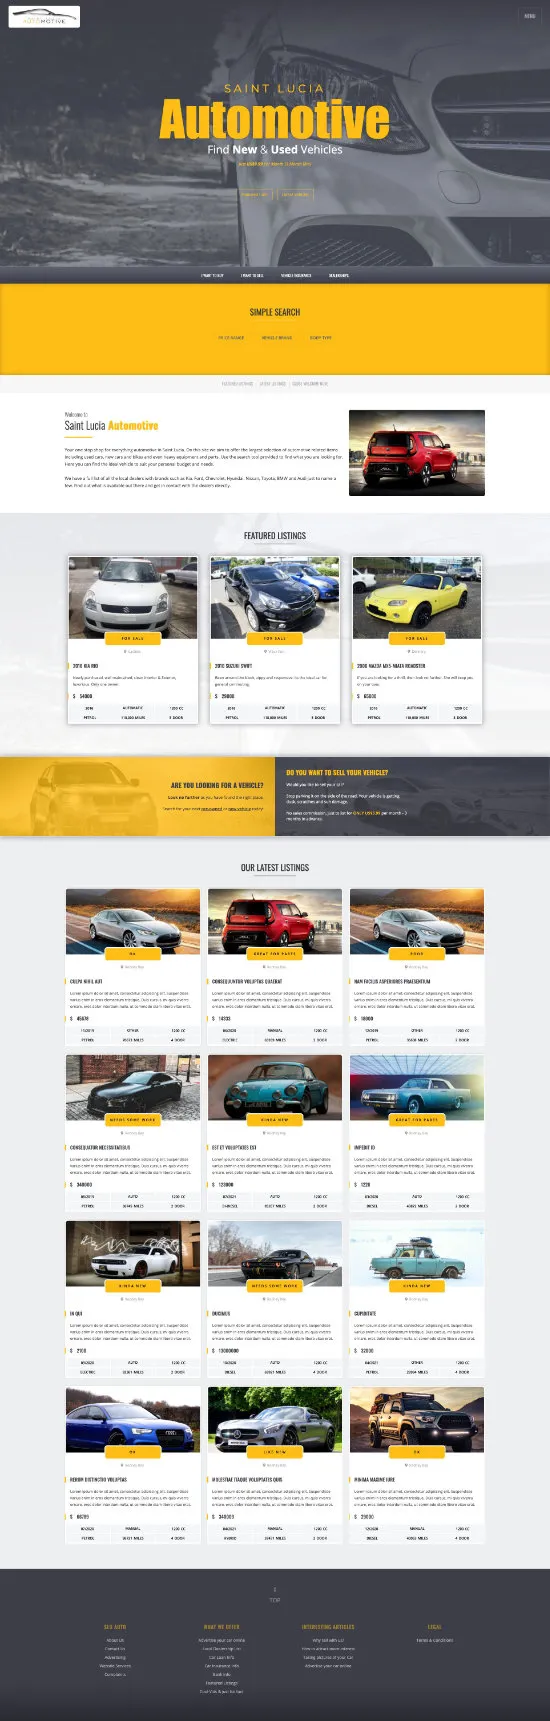 Demo website design St Lucia Automotive